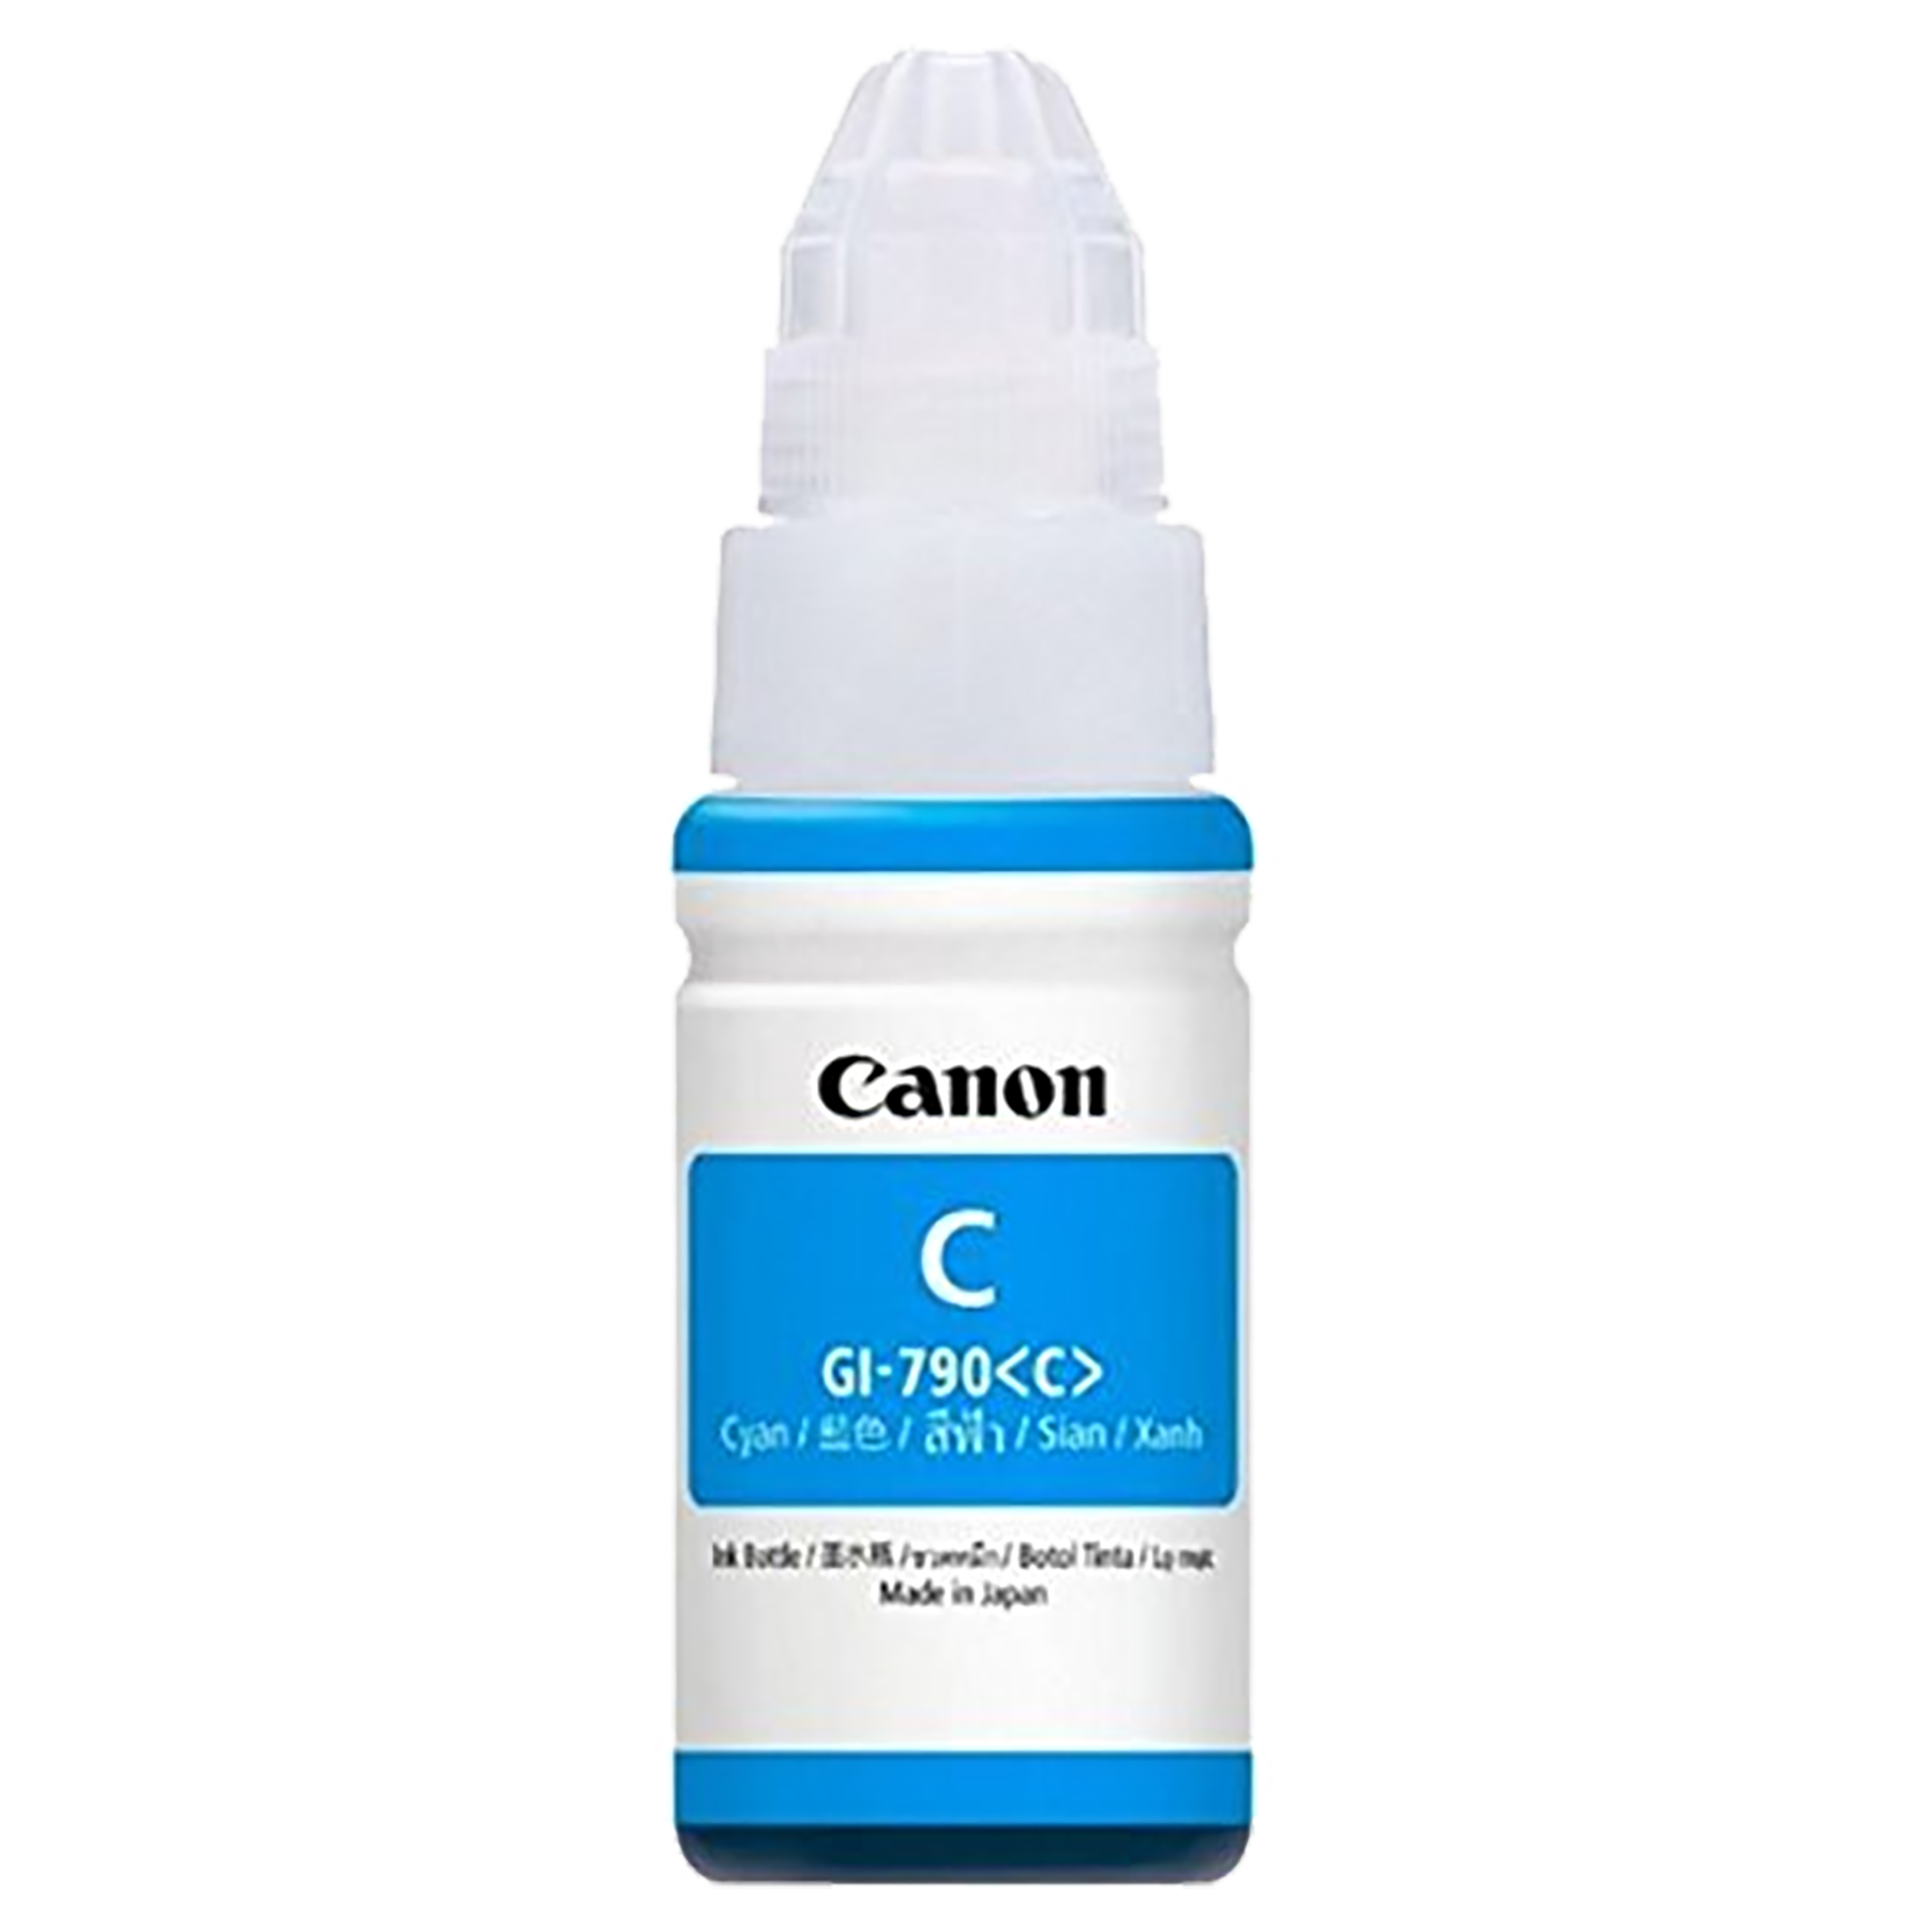 Canon Pixma Ink GI-790 Pack Of 1 Ink Bottle (0672C003AF, Cyan)_1